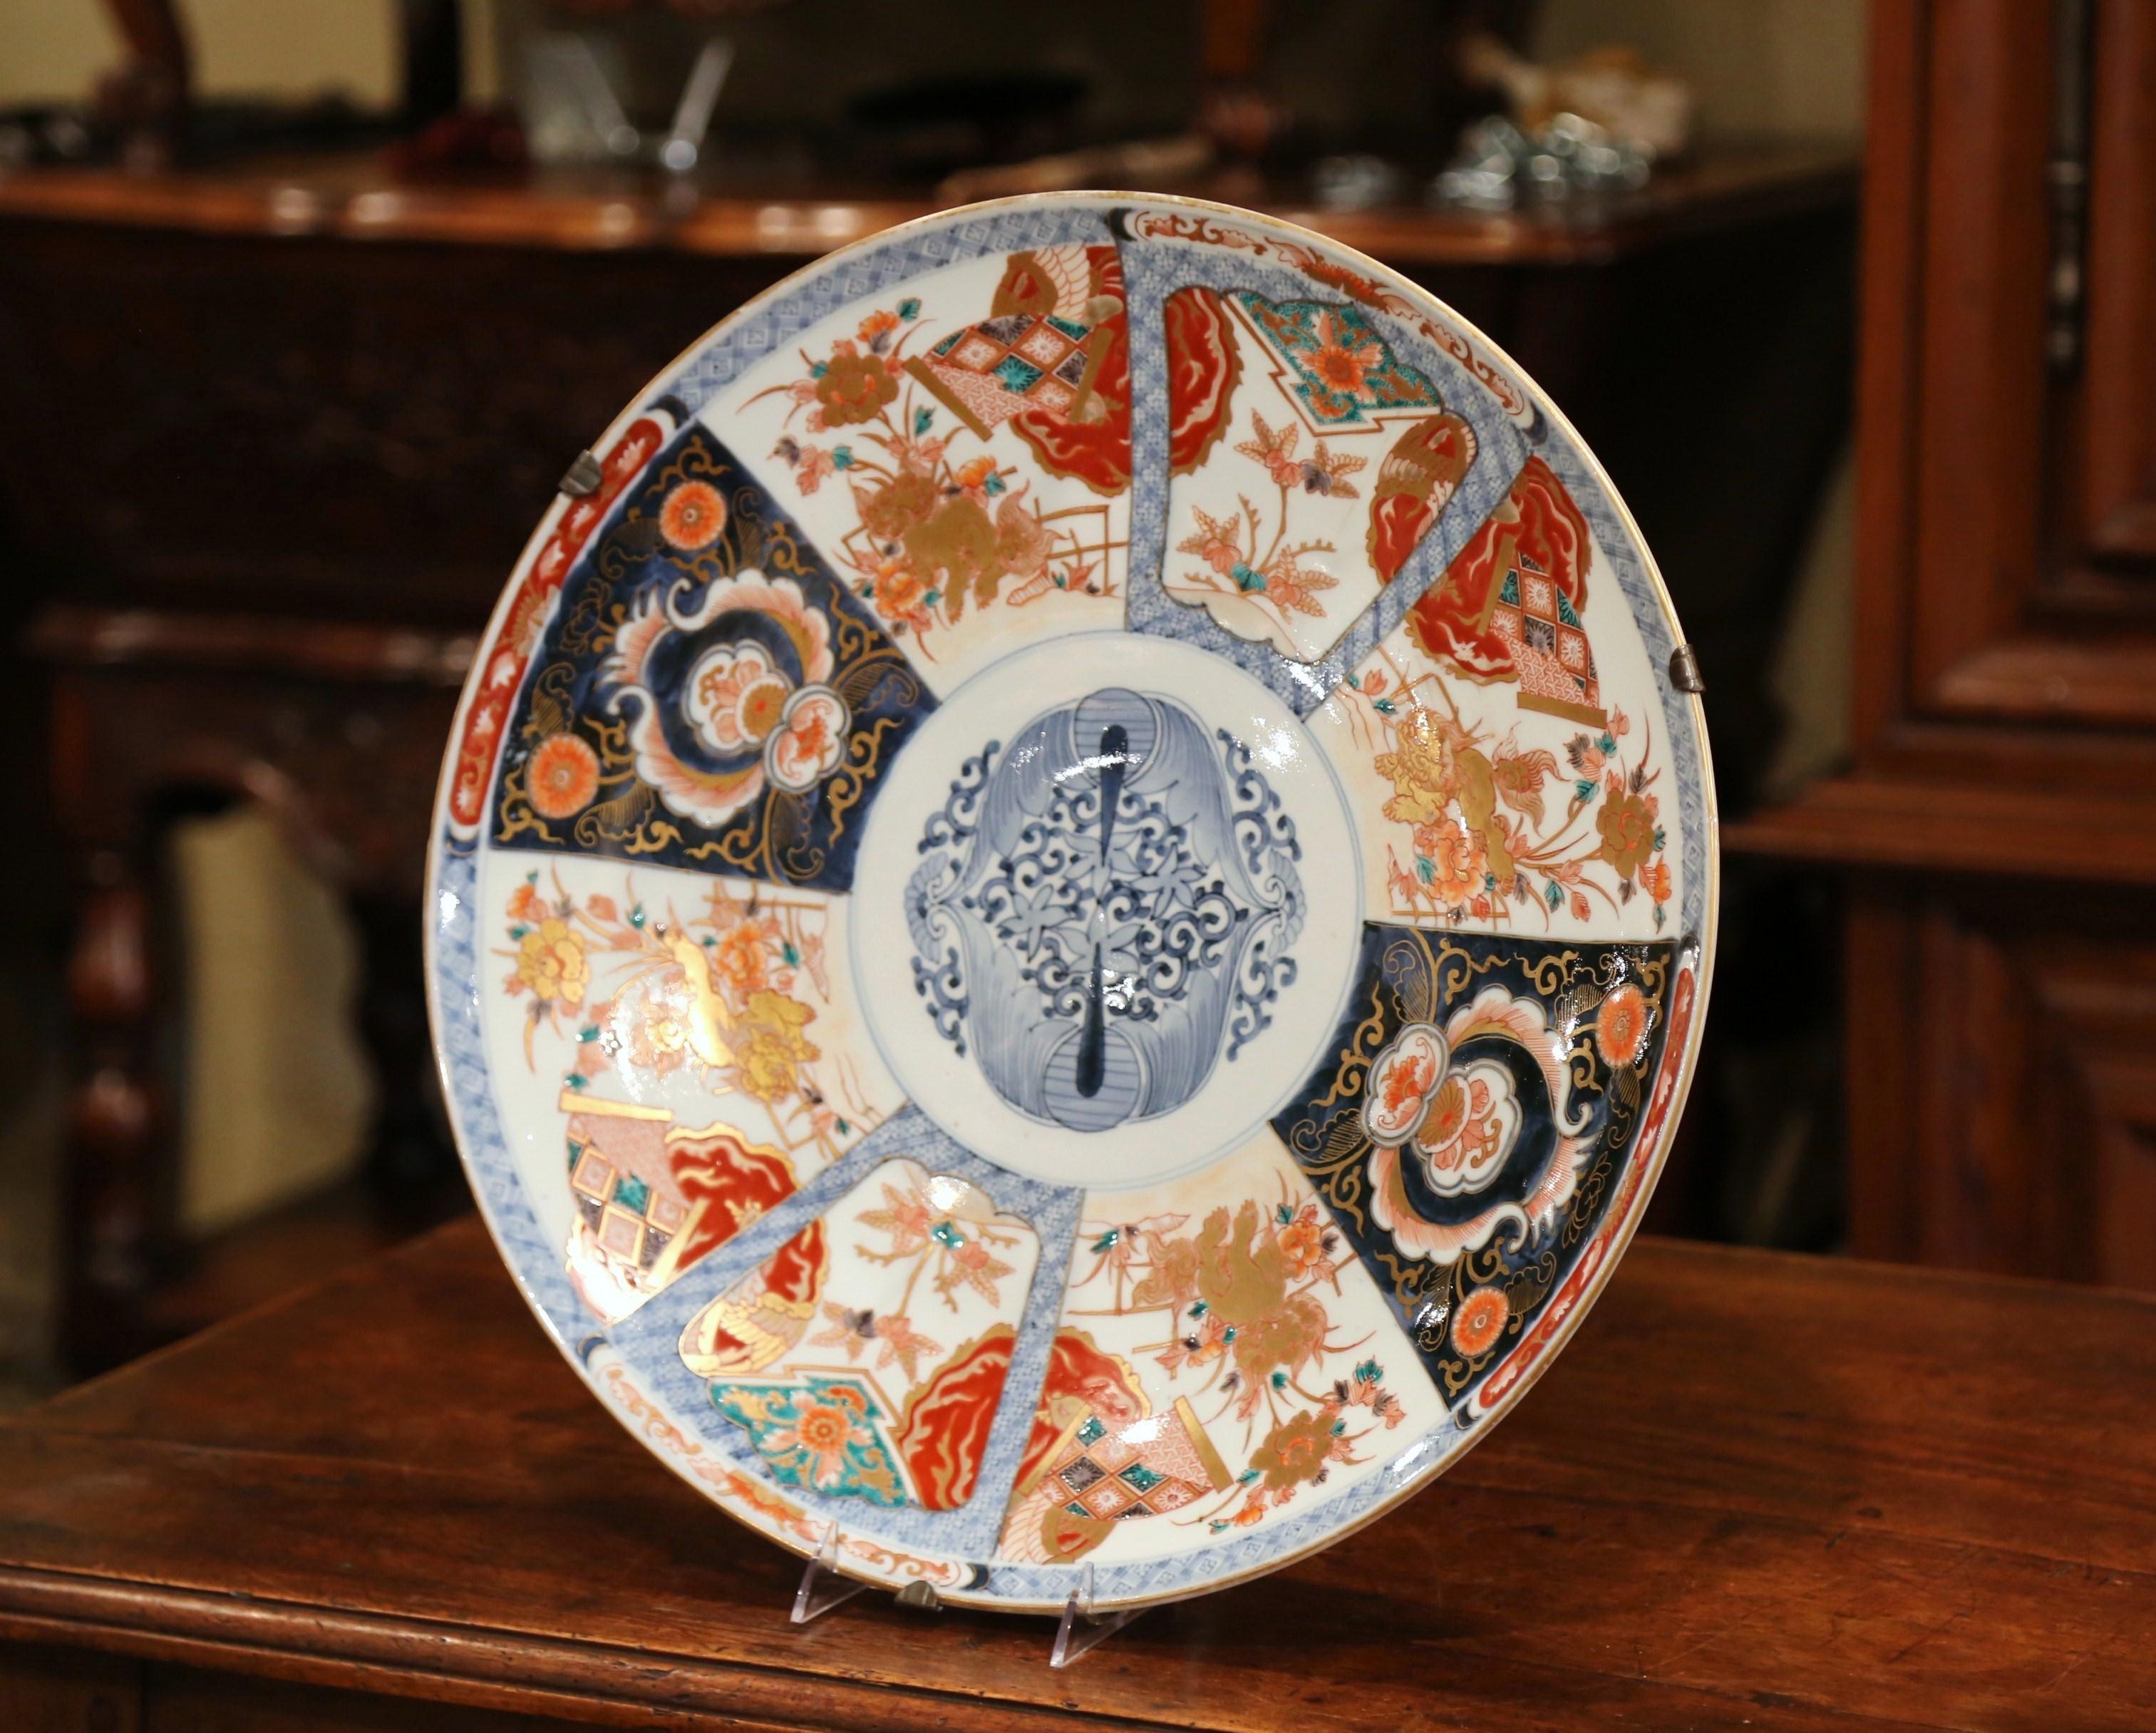 Dekorieren Sie eine Wand mit diesem großen Imari-Import-Ladegerät aus Porzellan. Die wichtige asiatische Keramikplatte wurde um 1890 in Japan hergestellt und weist ein handgemaltes Blumendekor mit vergoldeten Akzenten auf. Das exotische Ladegerät